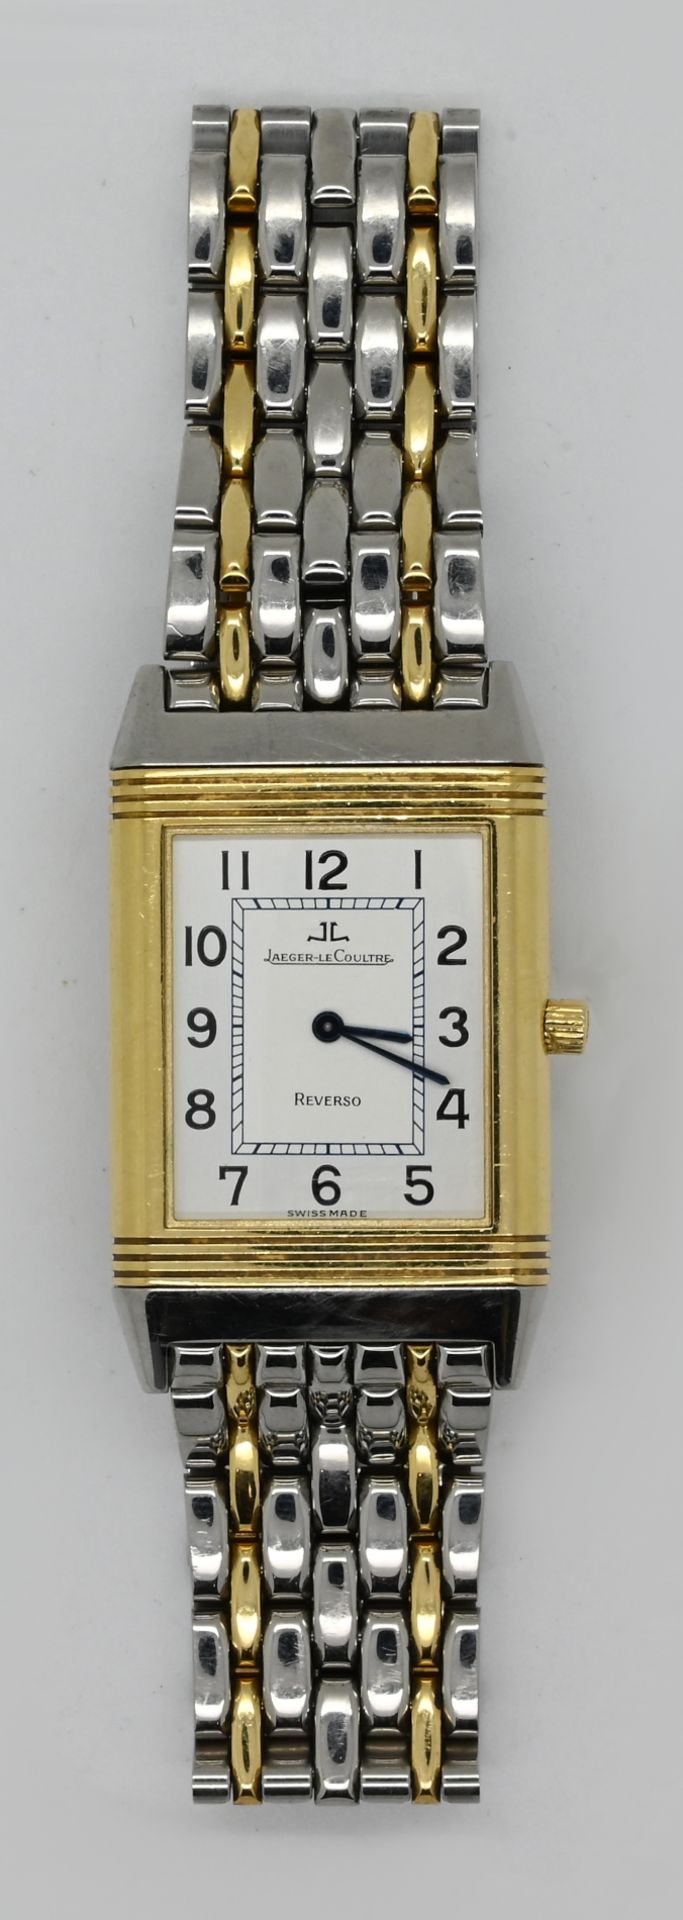 1 Armbanduhr JAEGER LECOULTRE Reverso, GG/Stahl, wohl mit passenden Ersatzgliedern, Handaufzug, Uhr